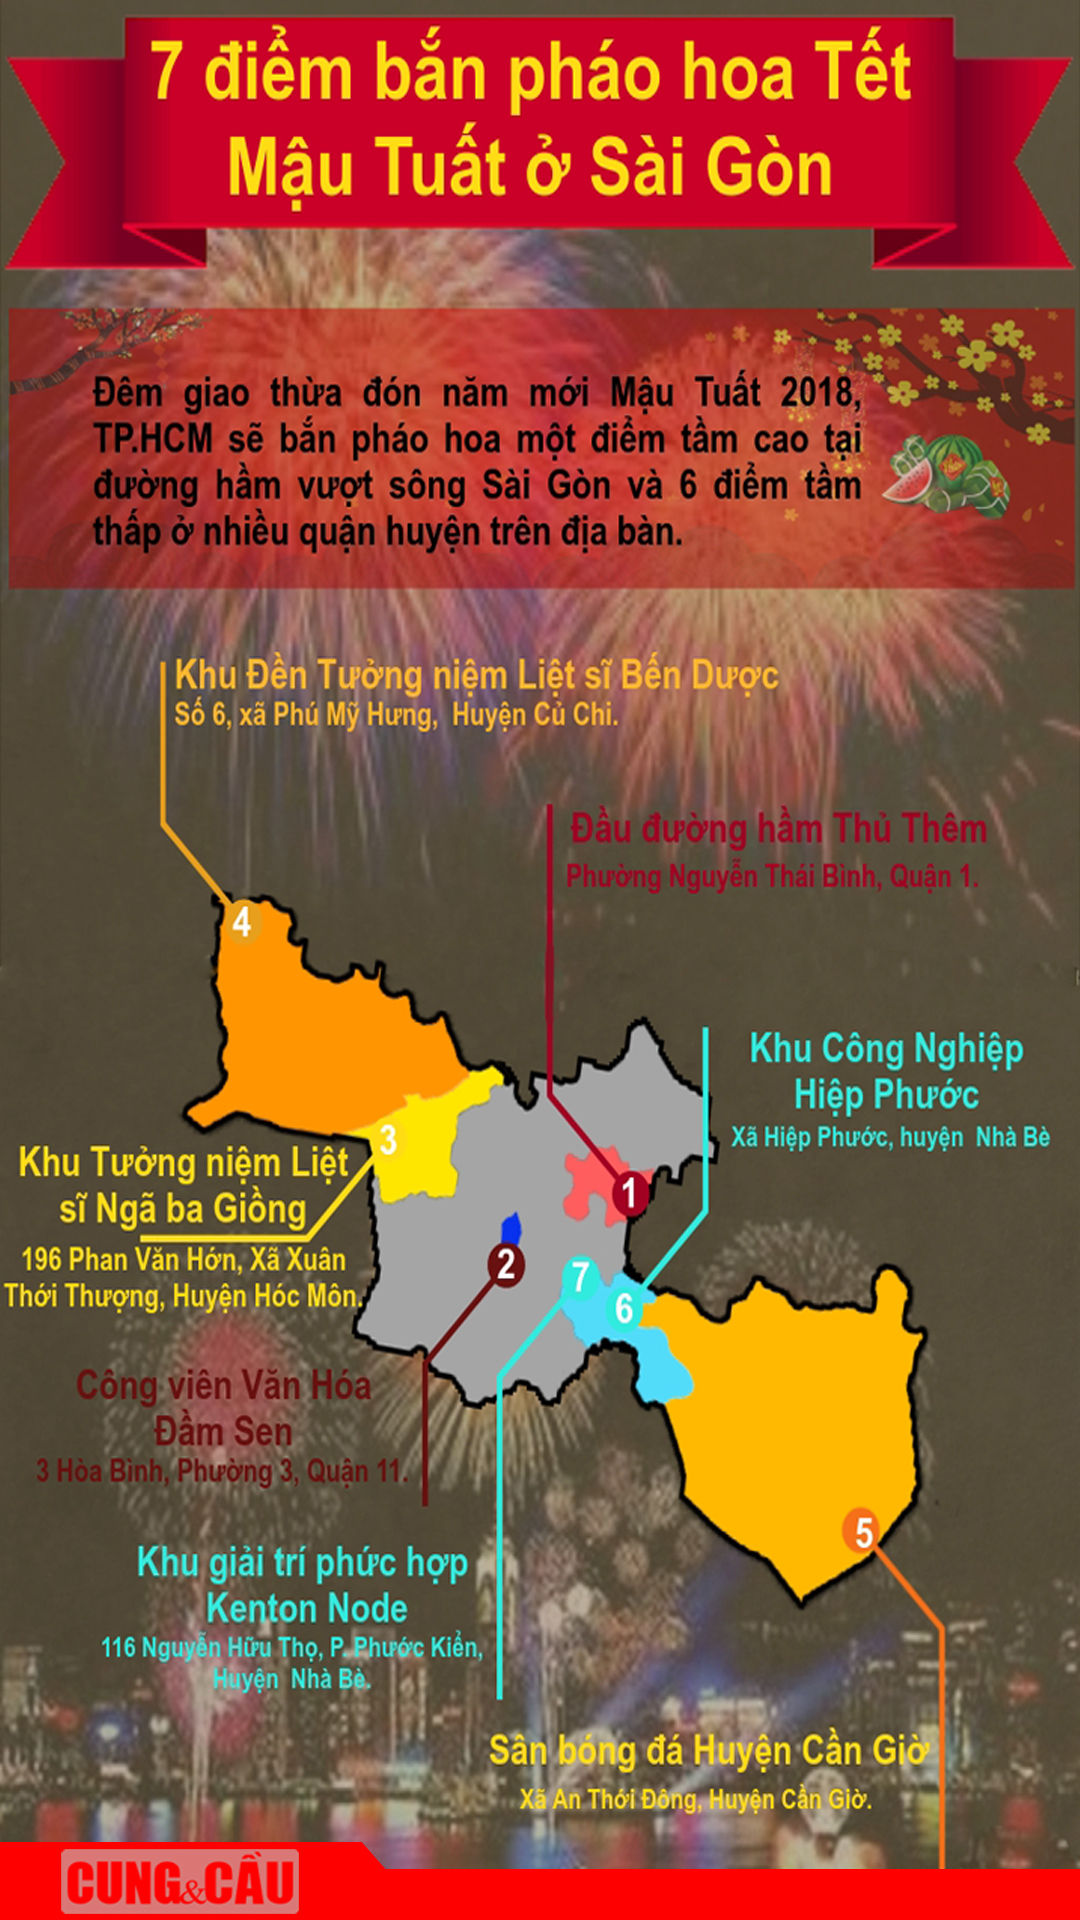 7 địa điểm bắn pháo hoa Tết cho người dân thưởng lãm ở Sài Gòn